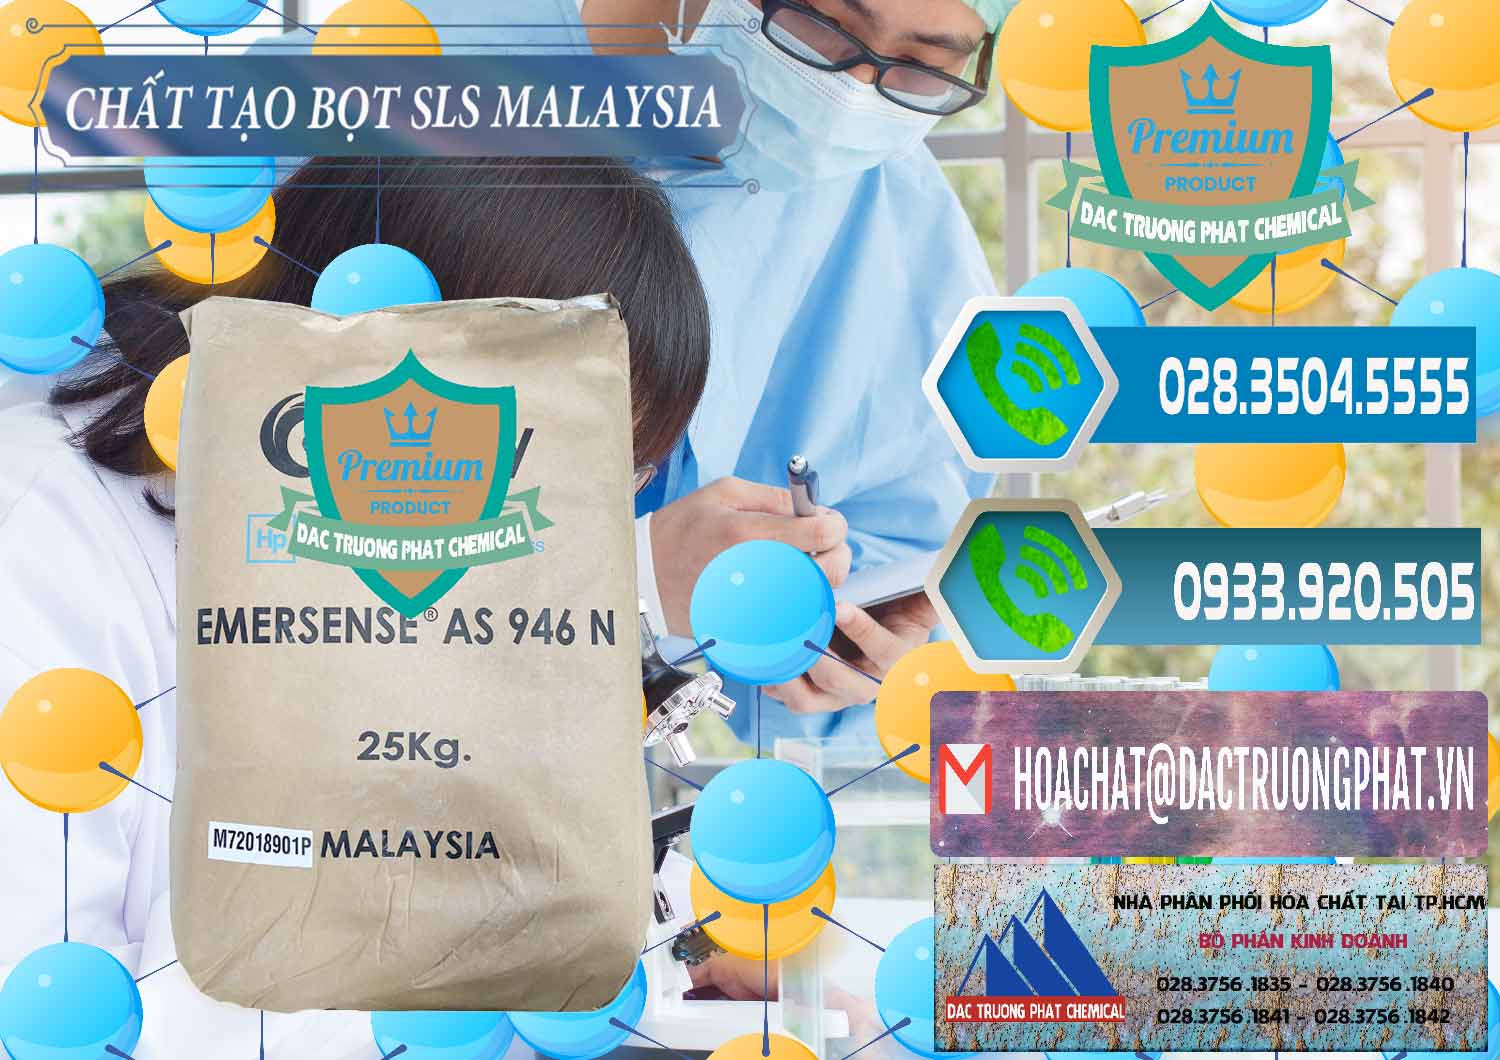 Công ty cung cấp & bán Chất Tạo Bọt SLS Emery - Emersense AS 946N Mã Lai Malaysia - 0423 - Nơi cung cấp & kinh doanh hóa chất tại TP.HCM - congtyhoachat.net